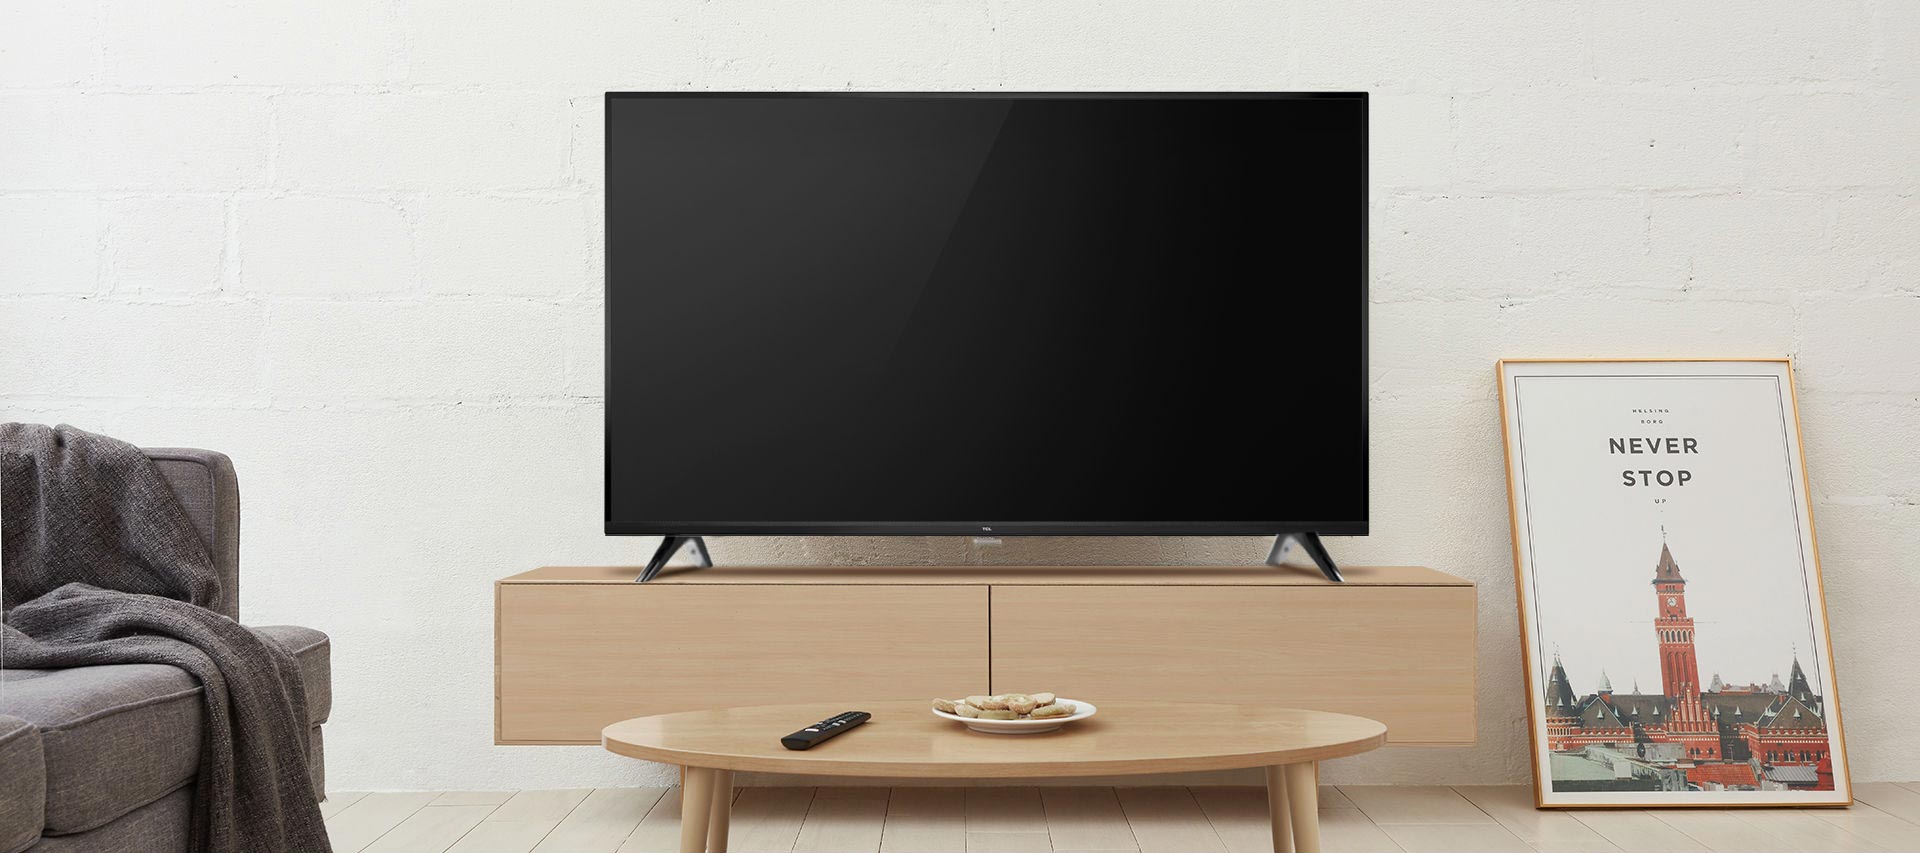 معرفی مشخصات تلویزیون تی سی ال D3000 در فروشگاه دی جی بانه